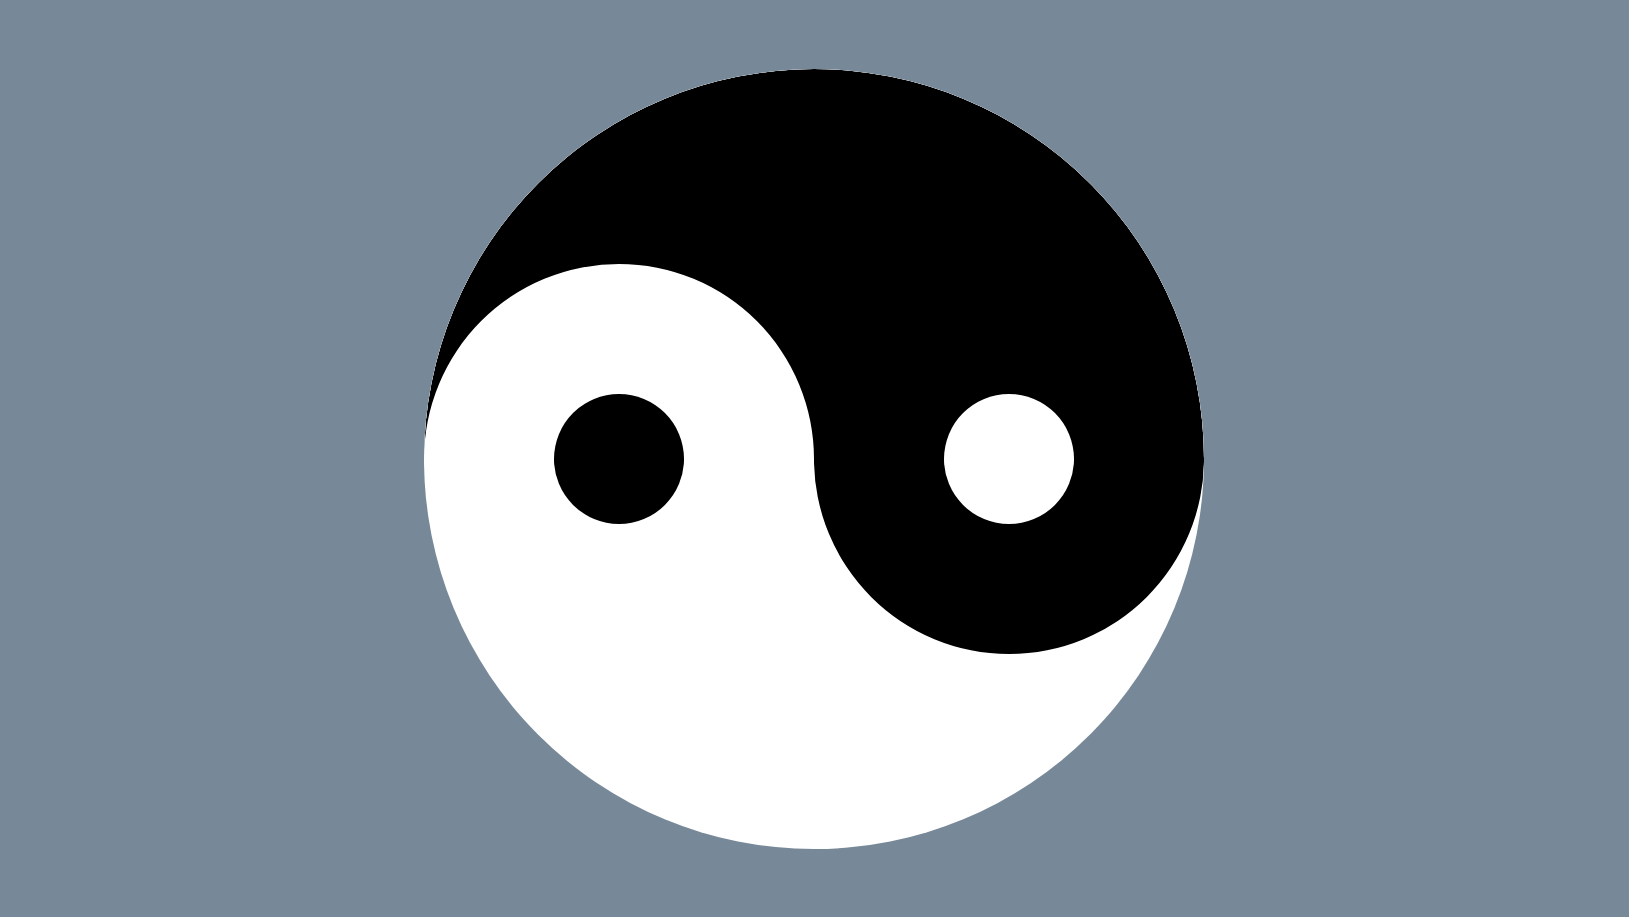 Yin Yang Black and White Box Logo - Creating Yin and Yang Loaders On the Web | CSS-Tricks